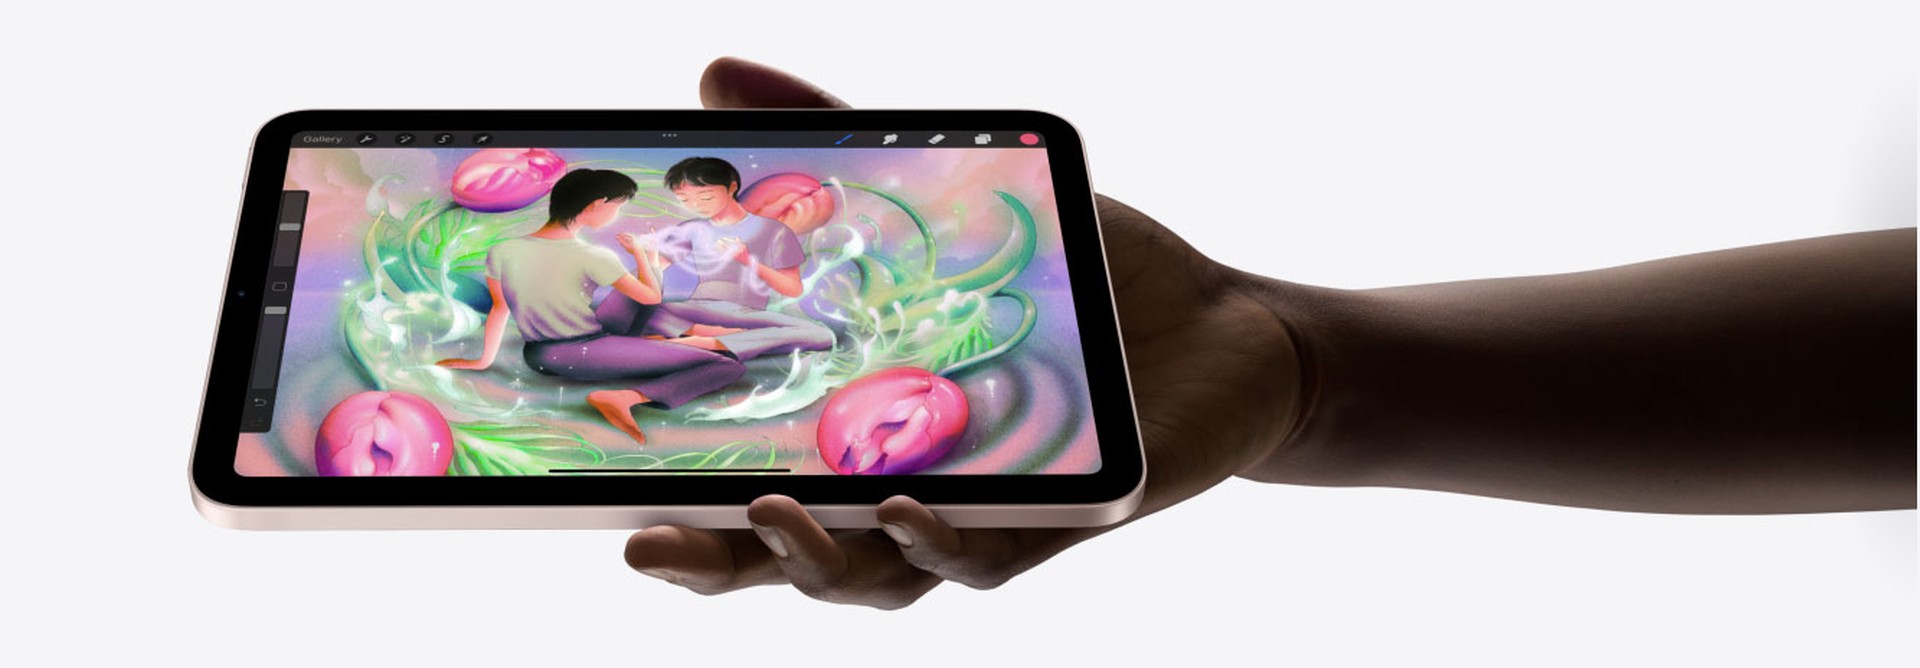 iPad Mini 6 má velký 8,3? Liquid Retina displej, přitom váží pouhých 297 g a je tenký 6,3 mm.